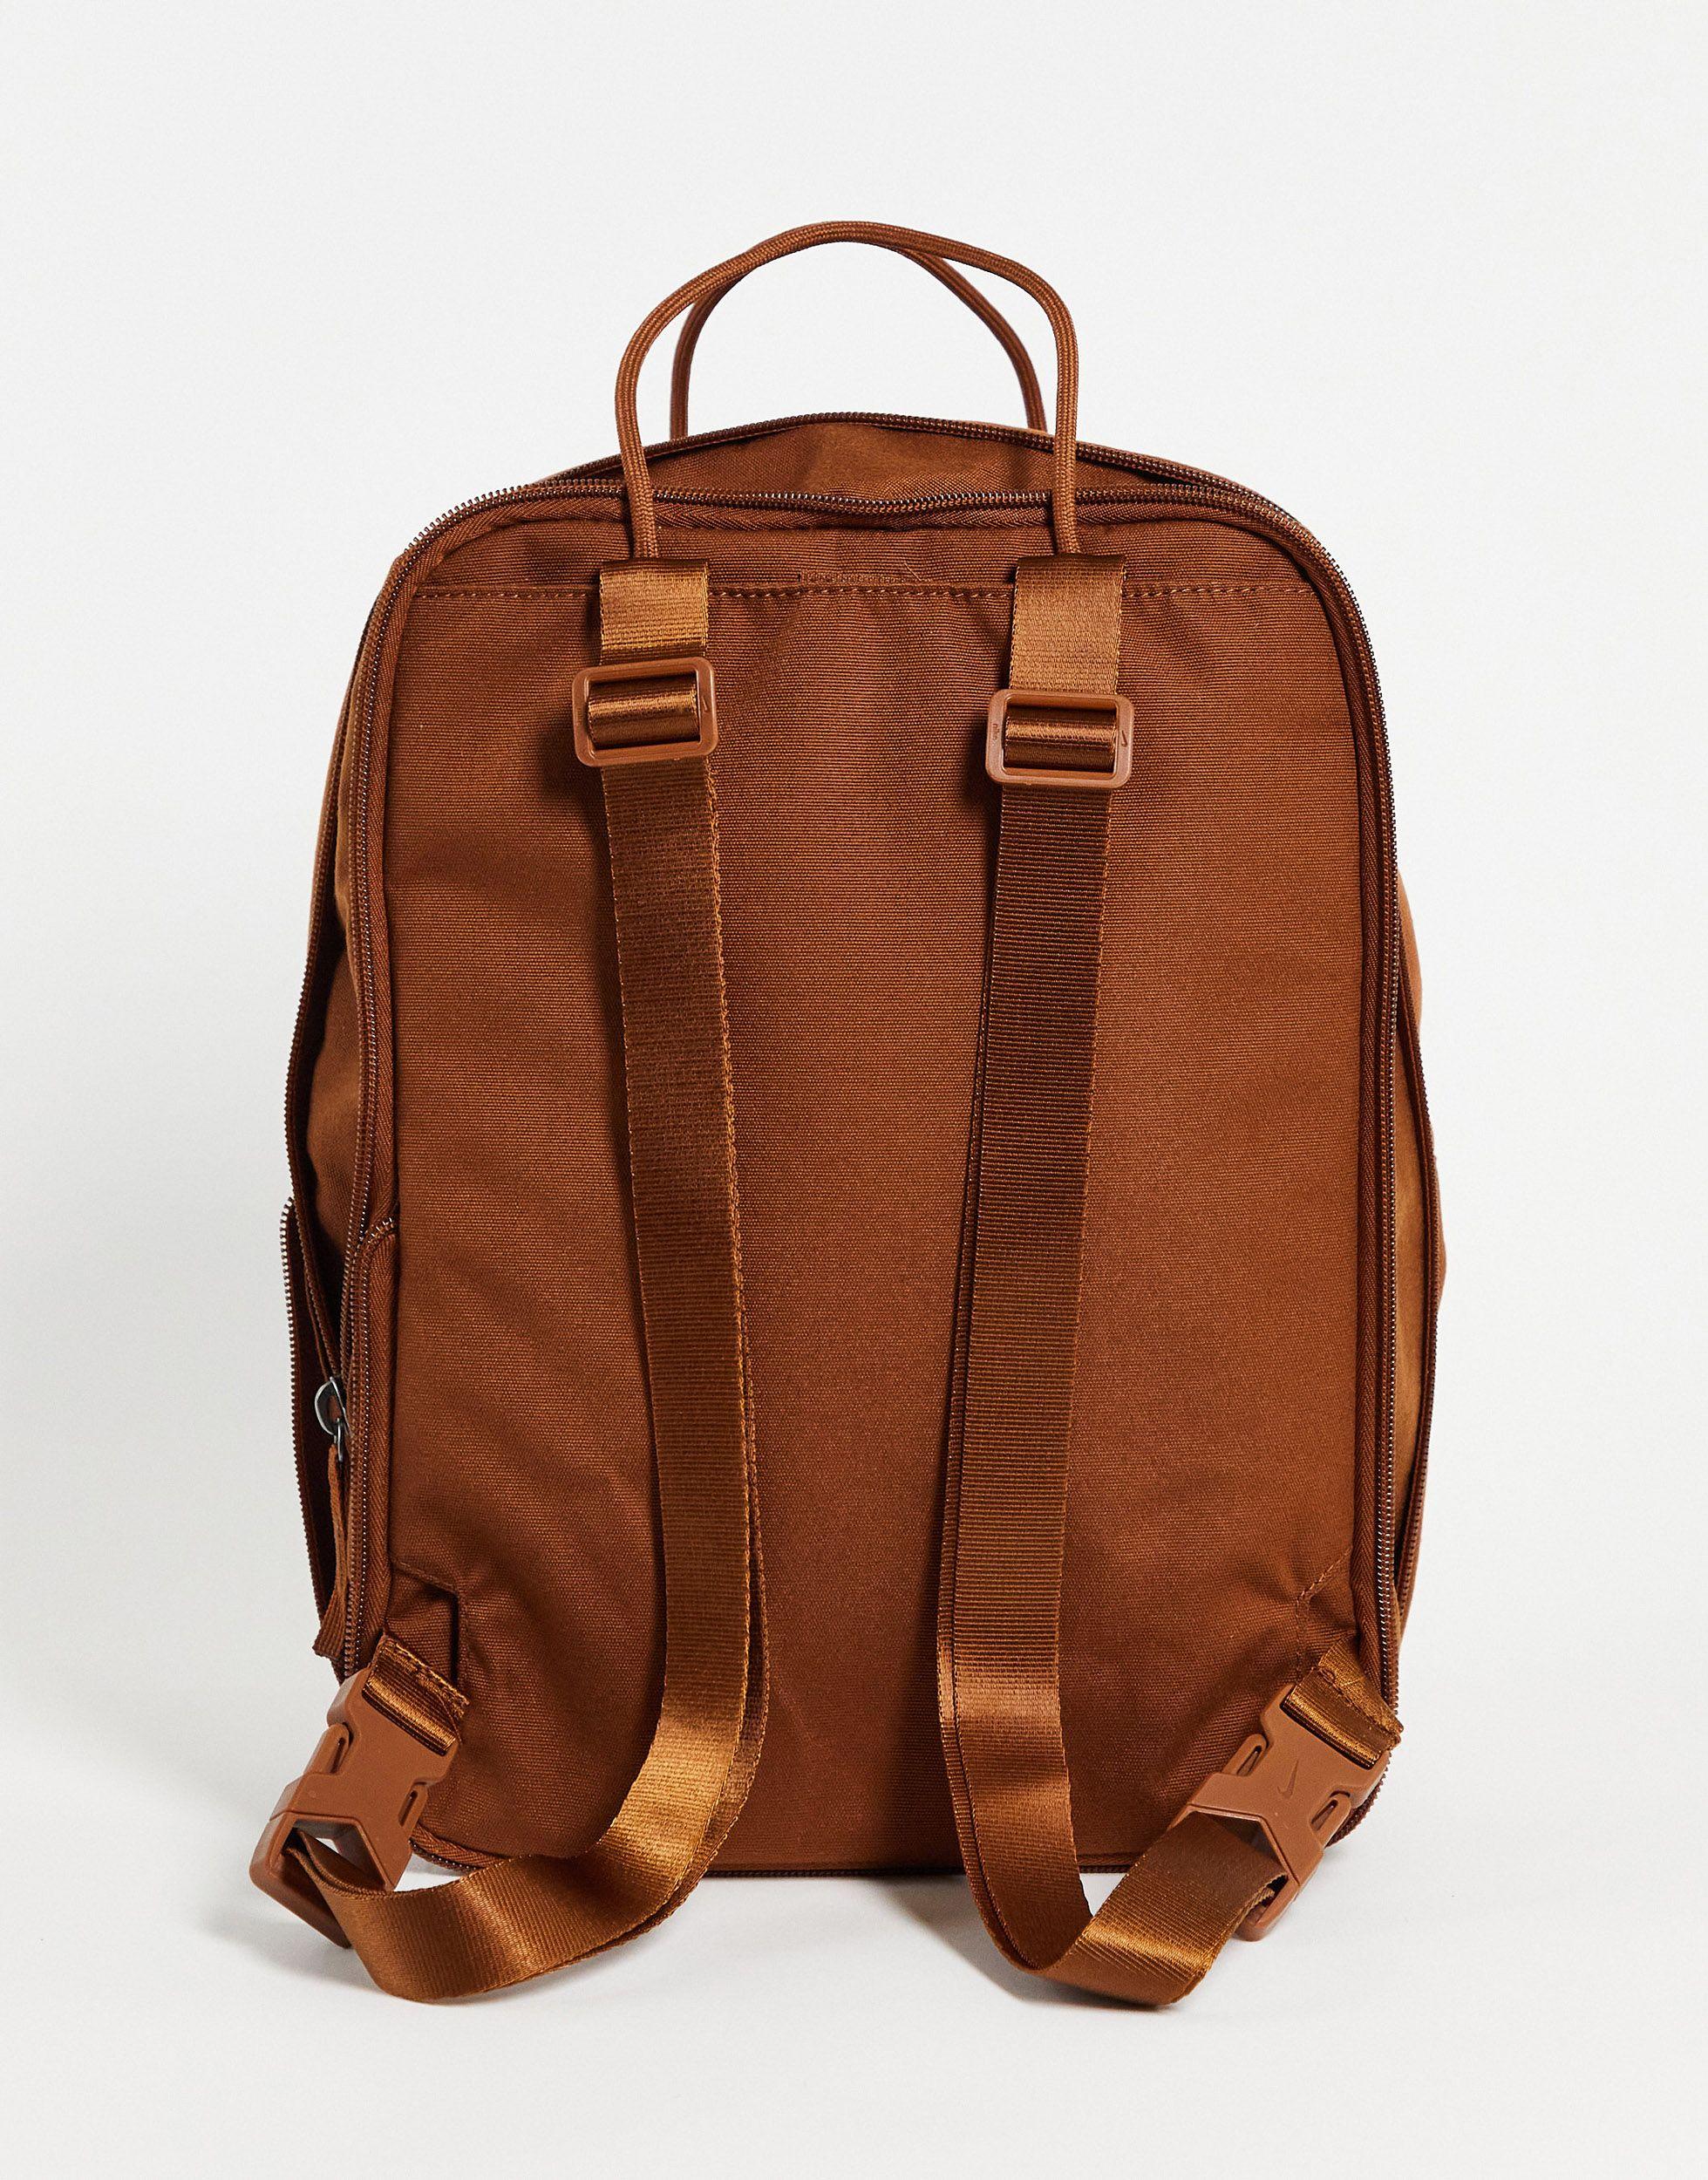 Nike Tanjun Square Backpack in Brown | Lyst Australia